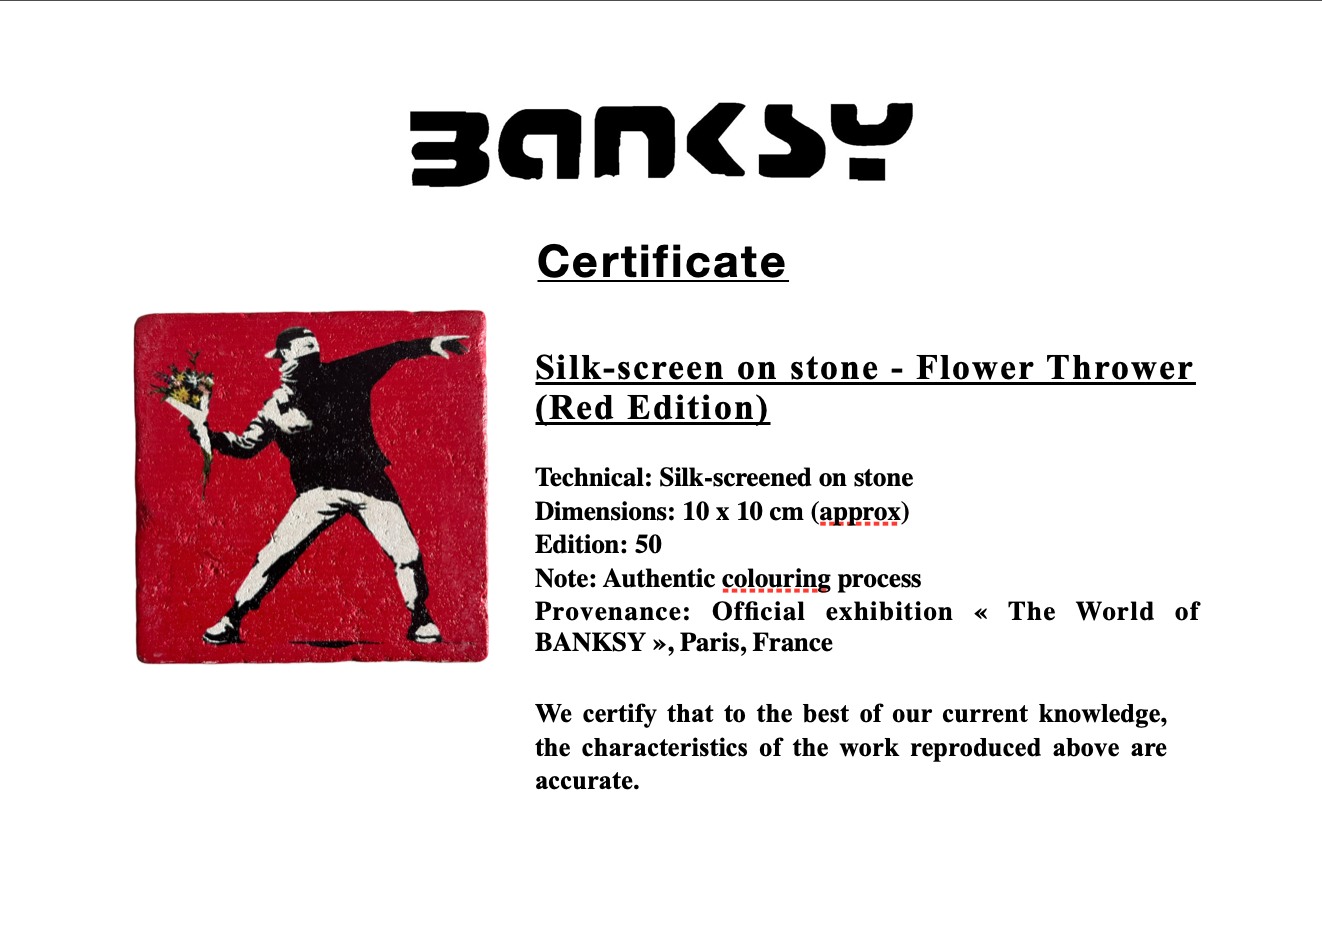 BANKSY *Lanzador de Flores (Edición Roja)* Serigrafía sobre piedra Edición Limitada